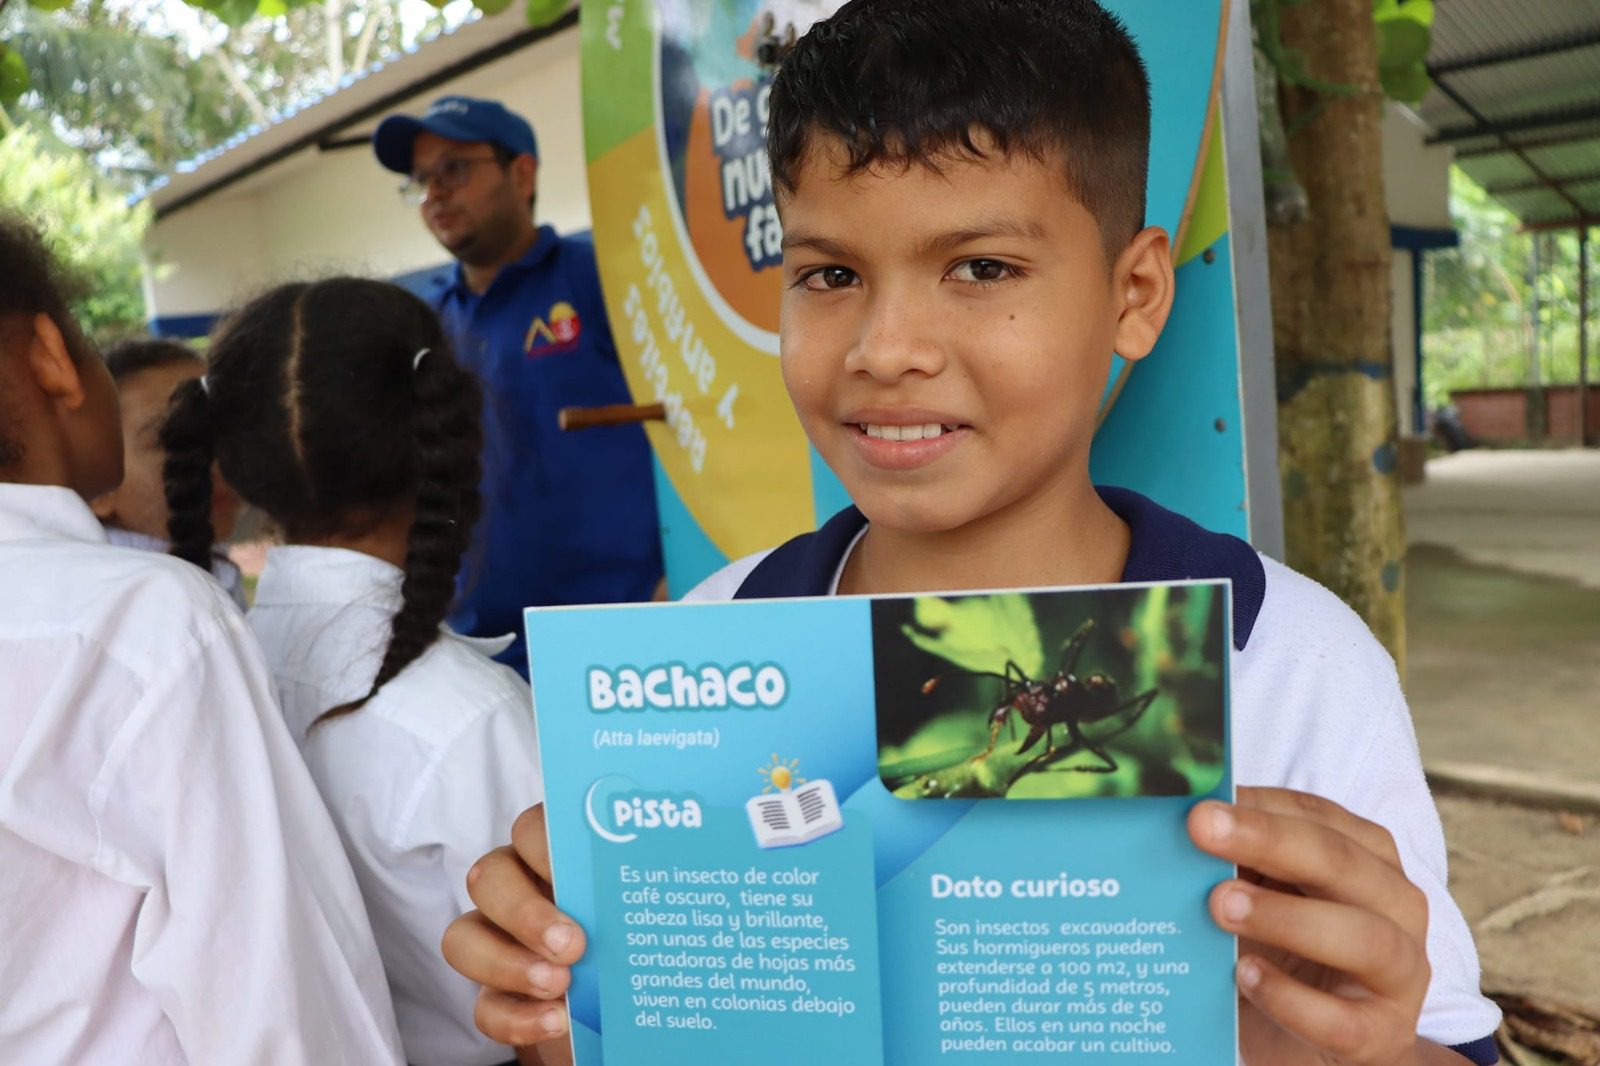 estudiante araucano participando de la jornada de educación ambiental